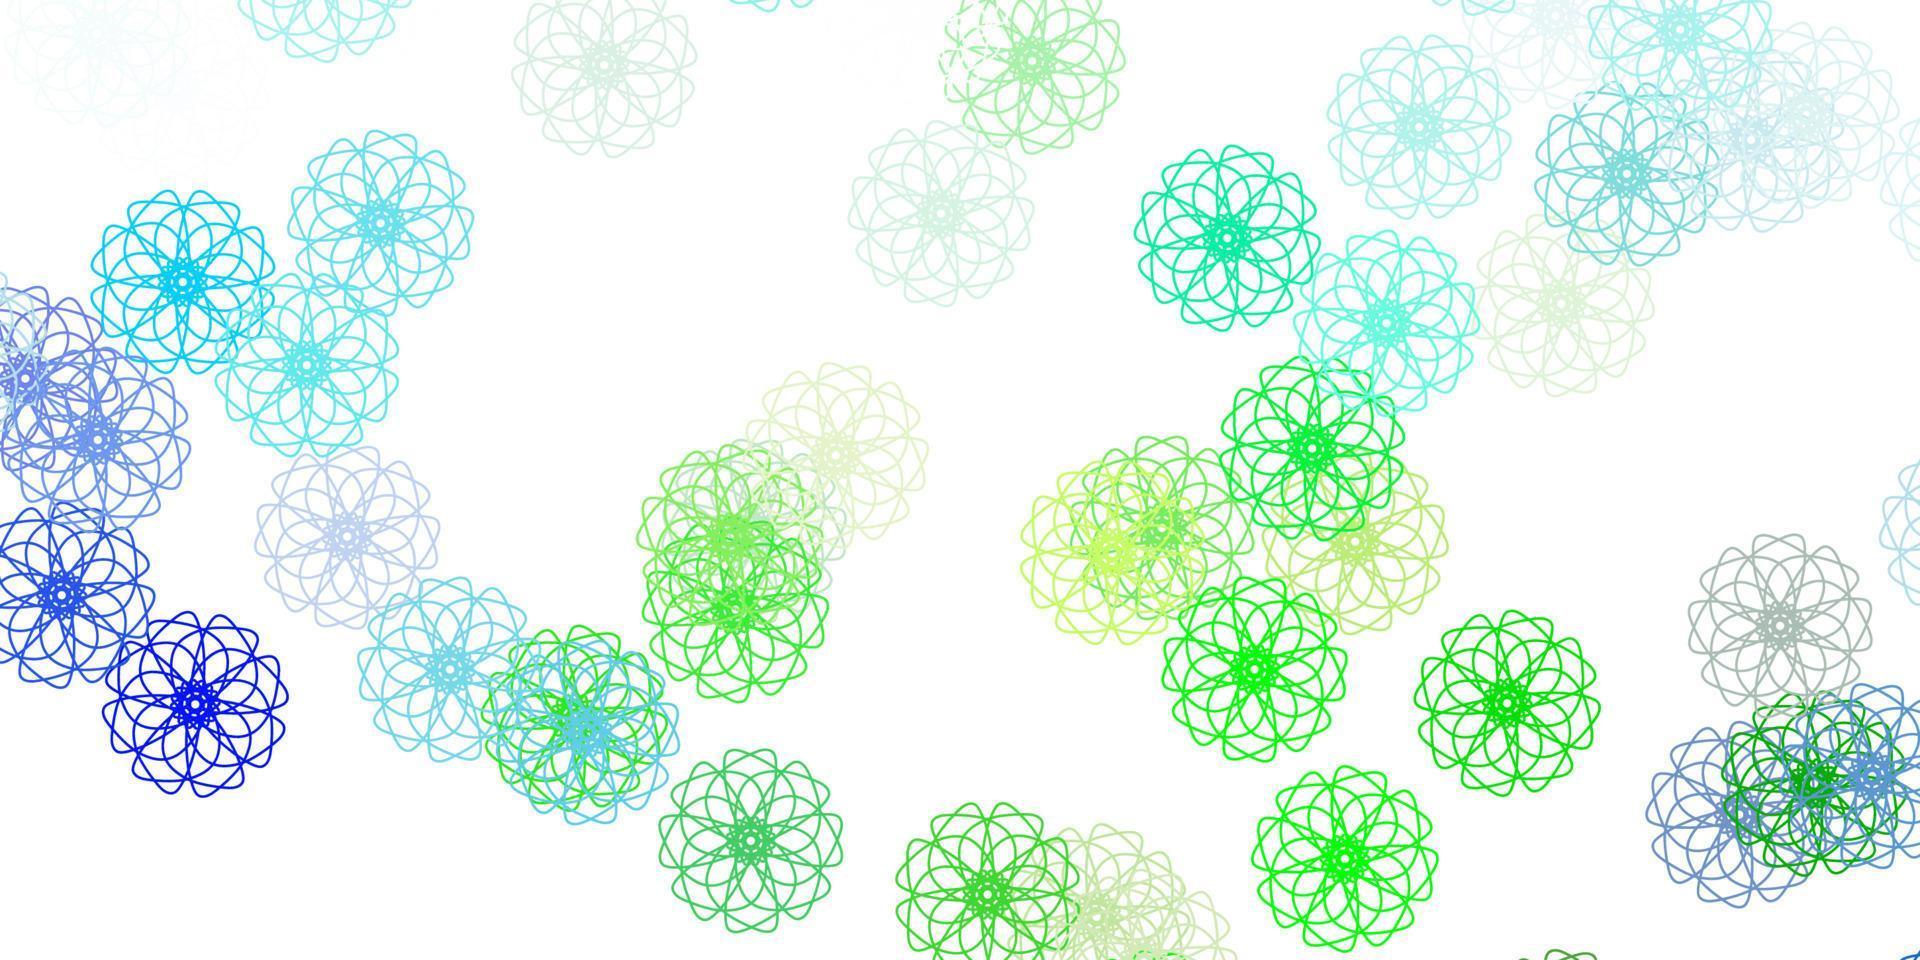 ljusblå, grön vektor doodle textur med blommor.